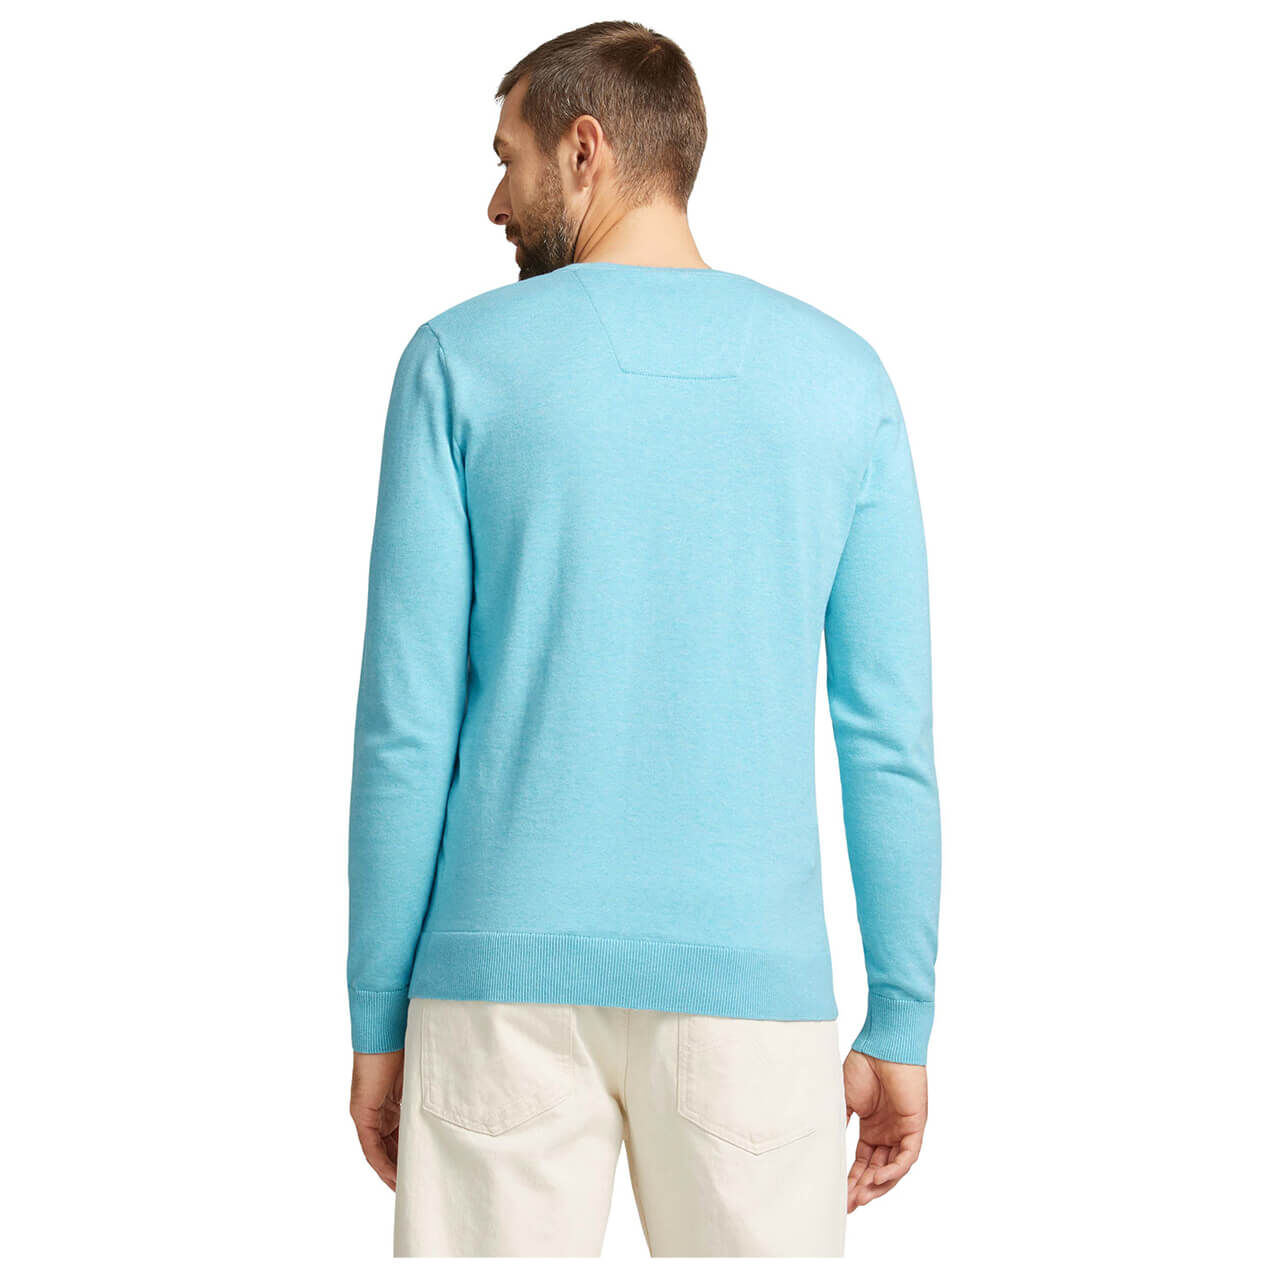 Tom Tailor Basic V-neck Sweater für Herren in Türkisblau, FarbNr.: 29541